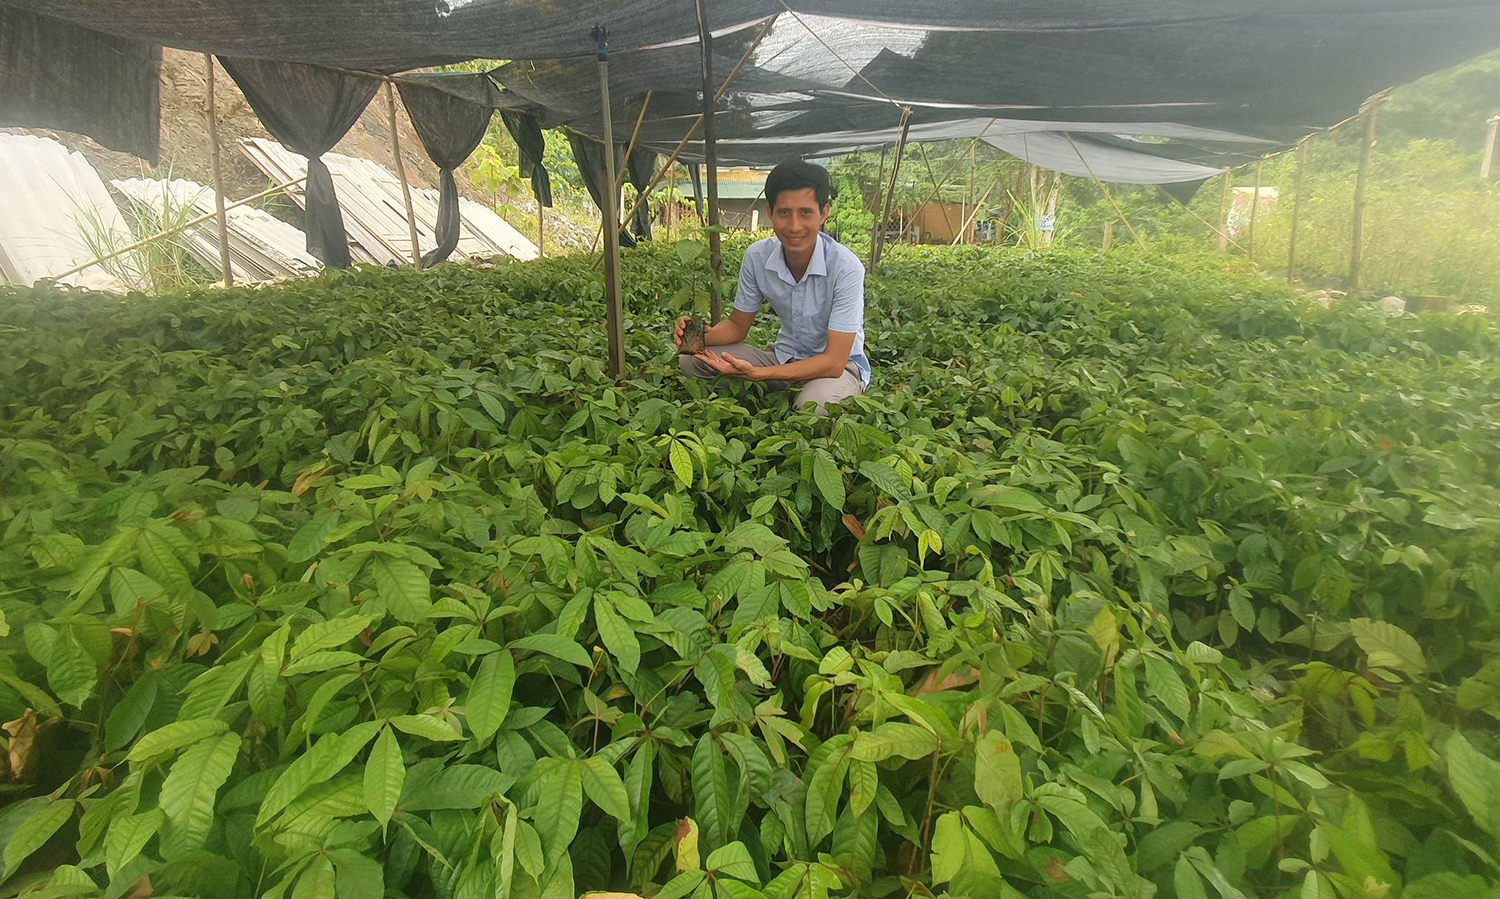 Giống cây bản địa trên địa bàn huyện Tuyên Hoá khá cao nên người dân rất mong được hỗ trợ kinh phí mua giống, kỹ thuật trồng, chăm sóc.